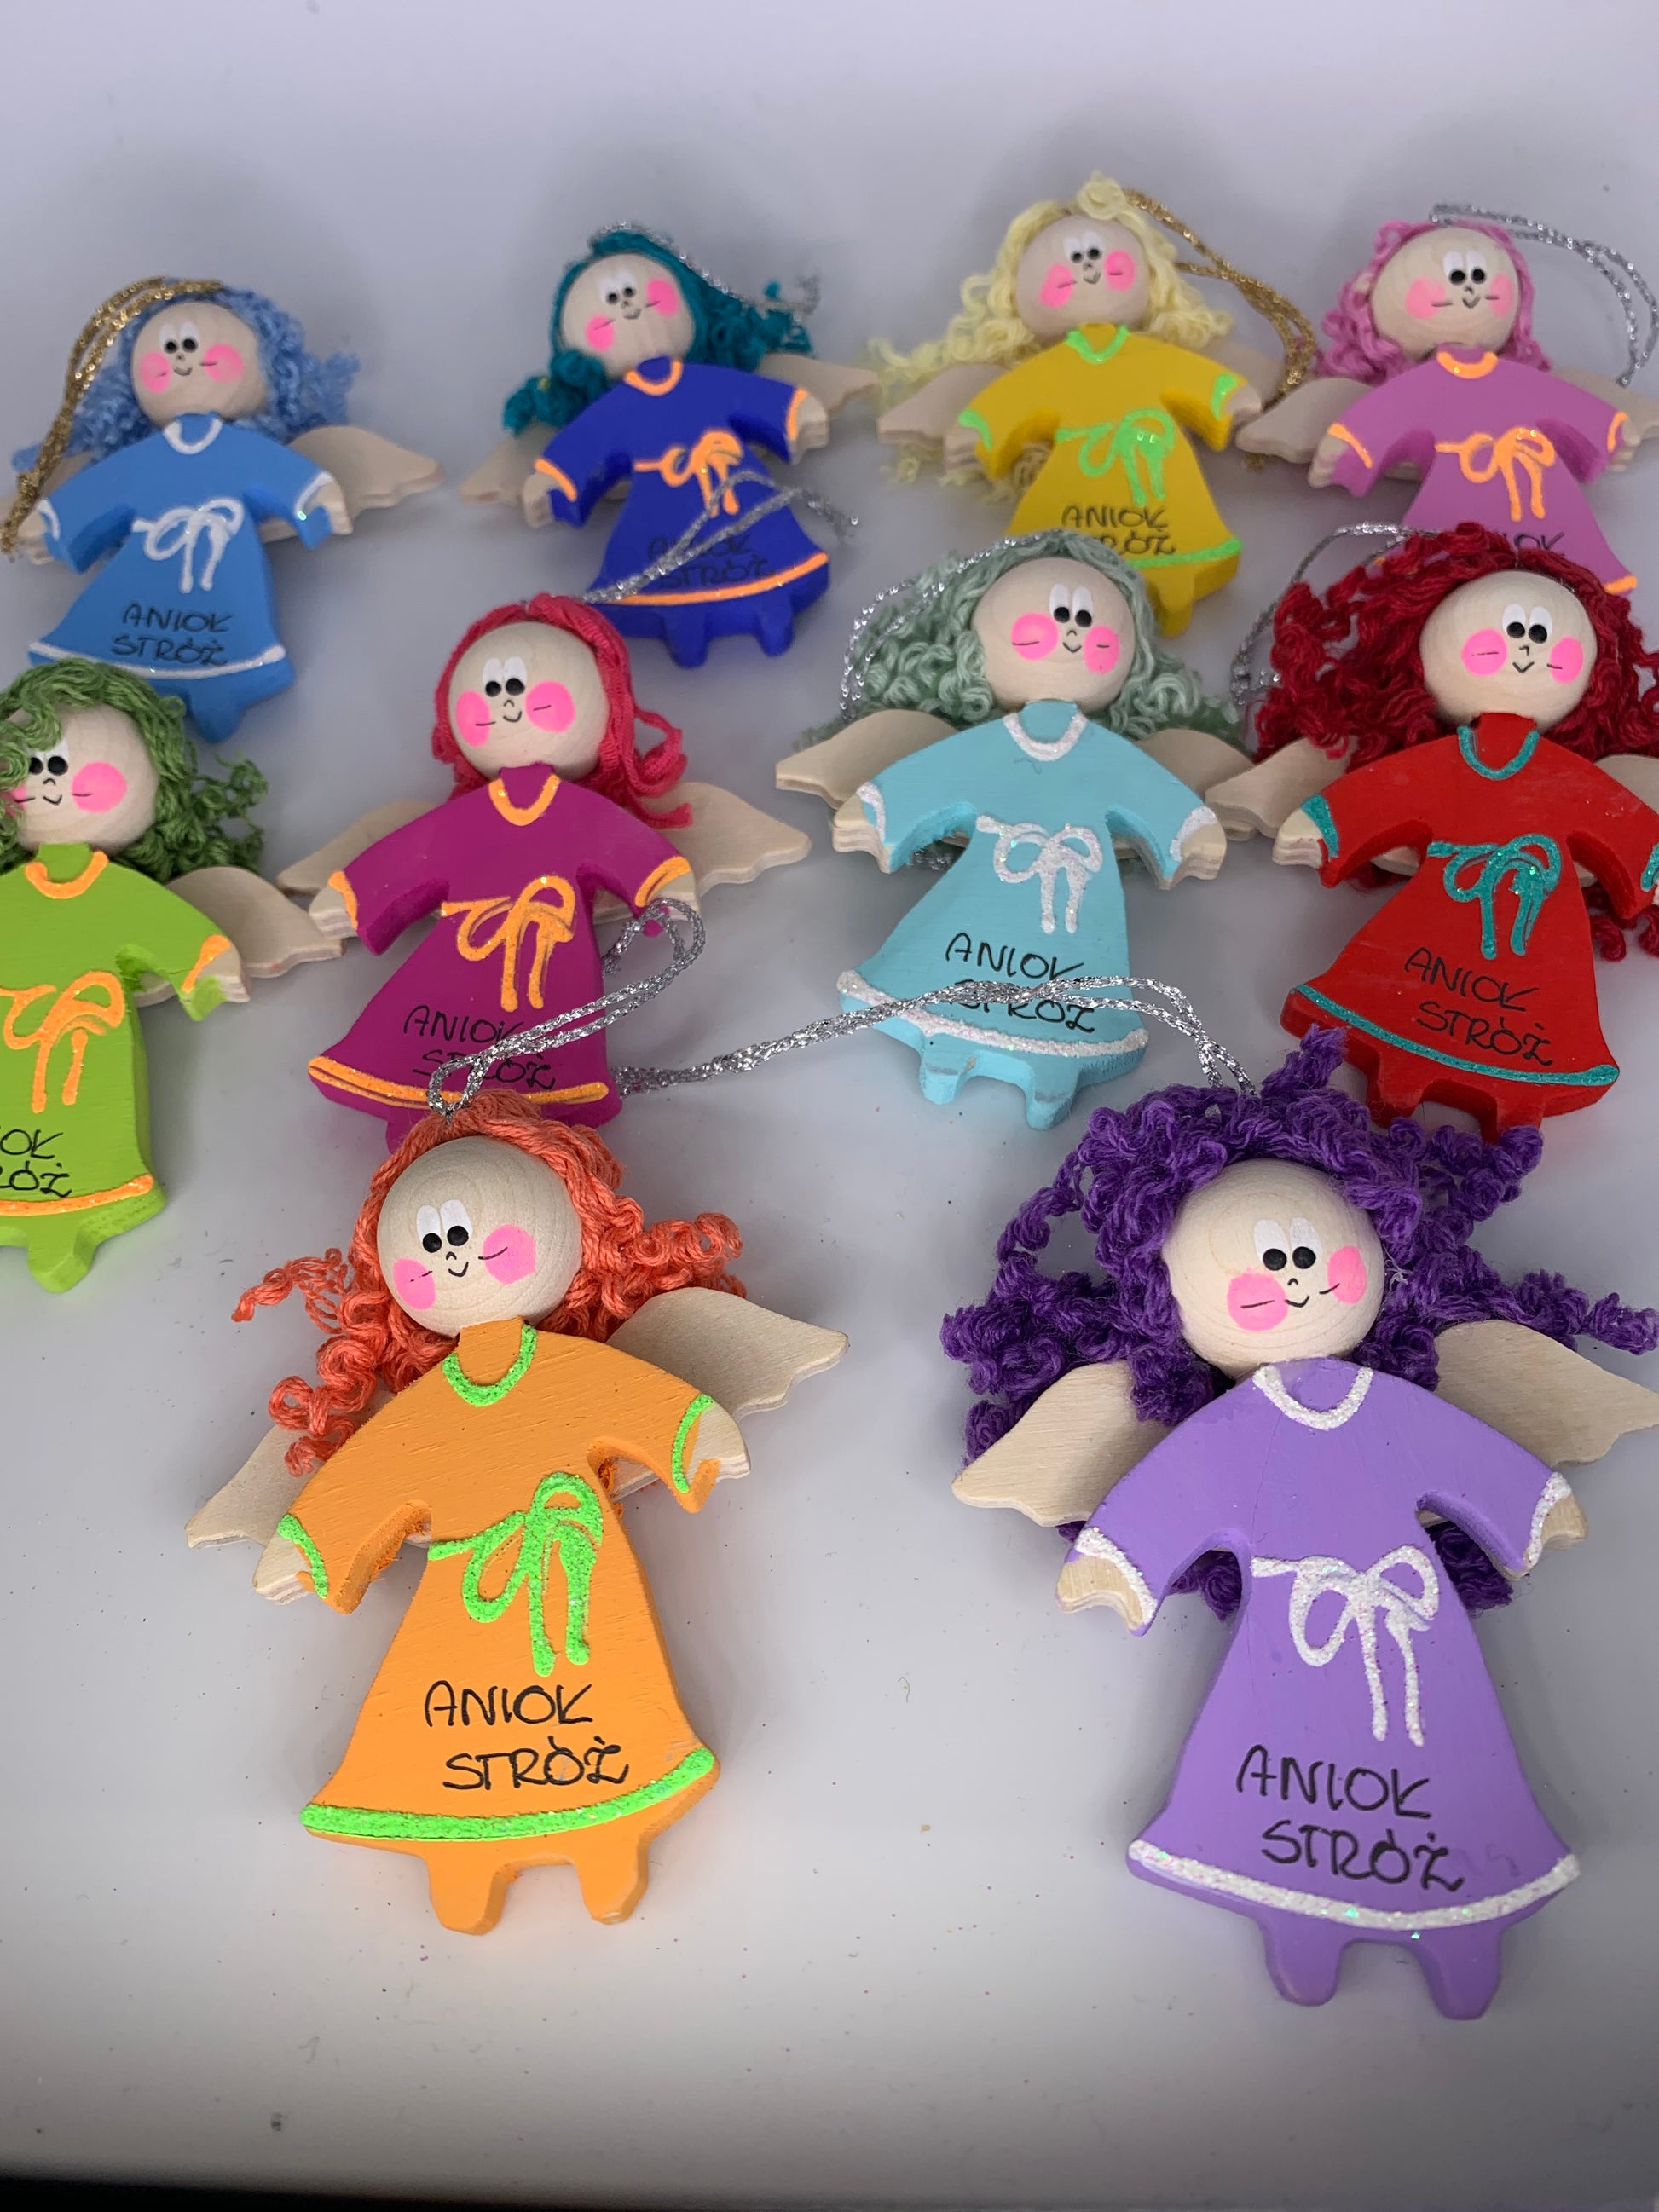 Catholic dolls toys